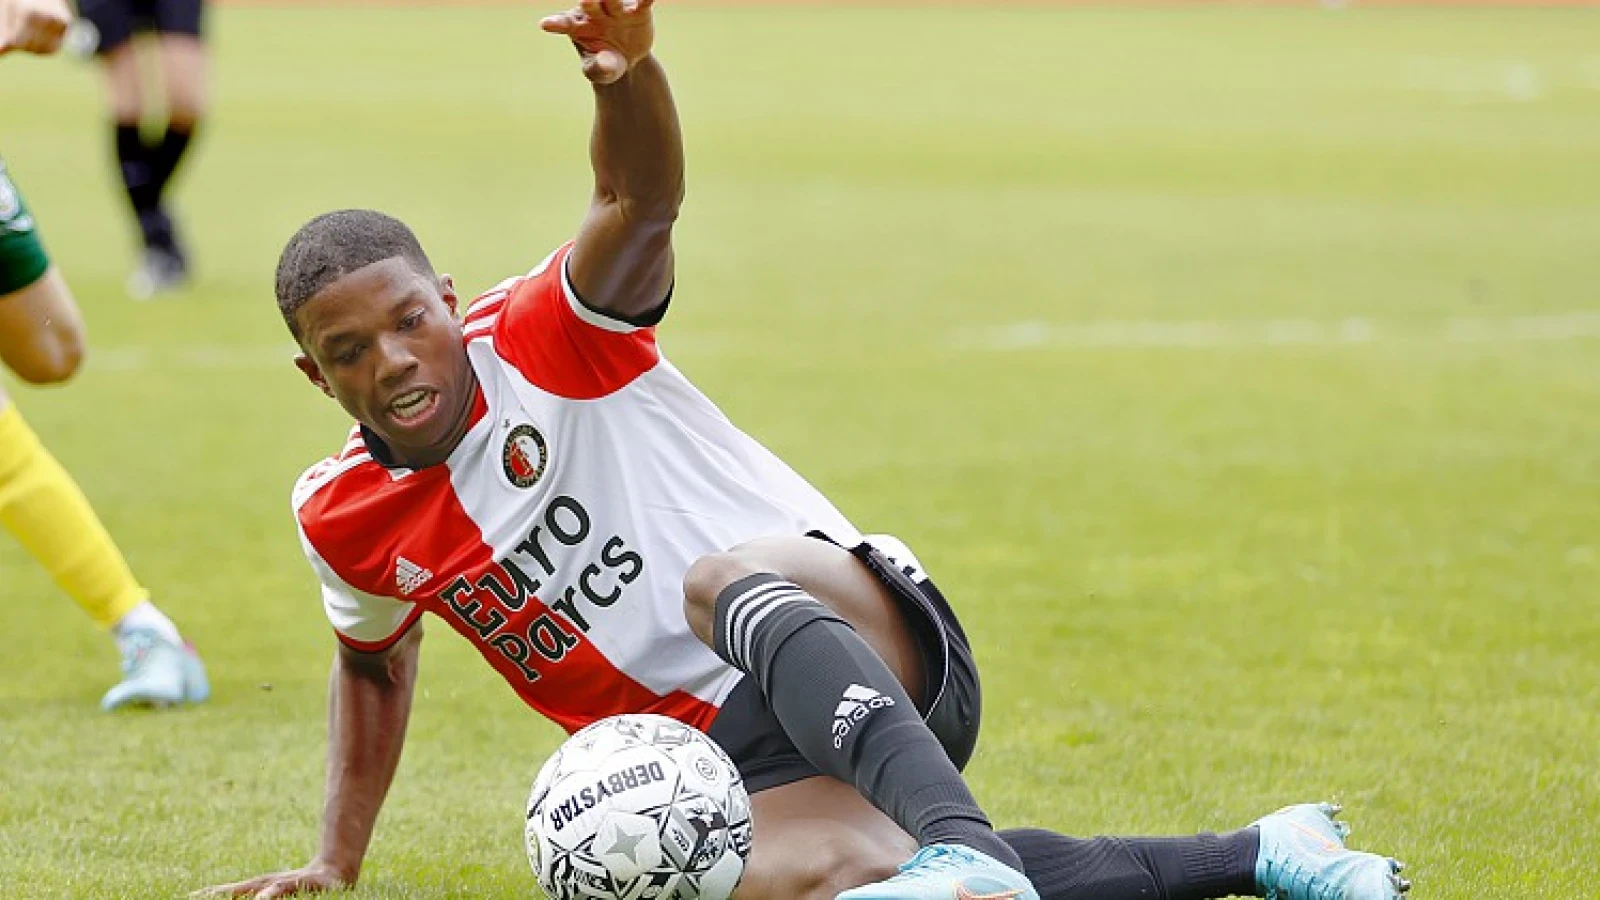 Transfer dichtbij: 'Feyenoord en Olympique Lyon naderen elkaar in de vraagprijs'